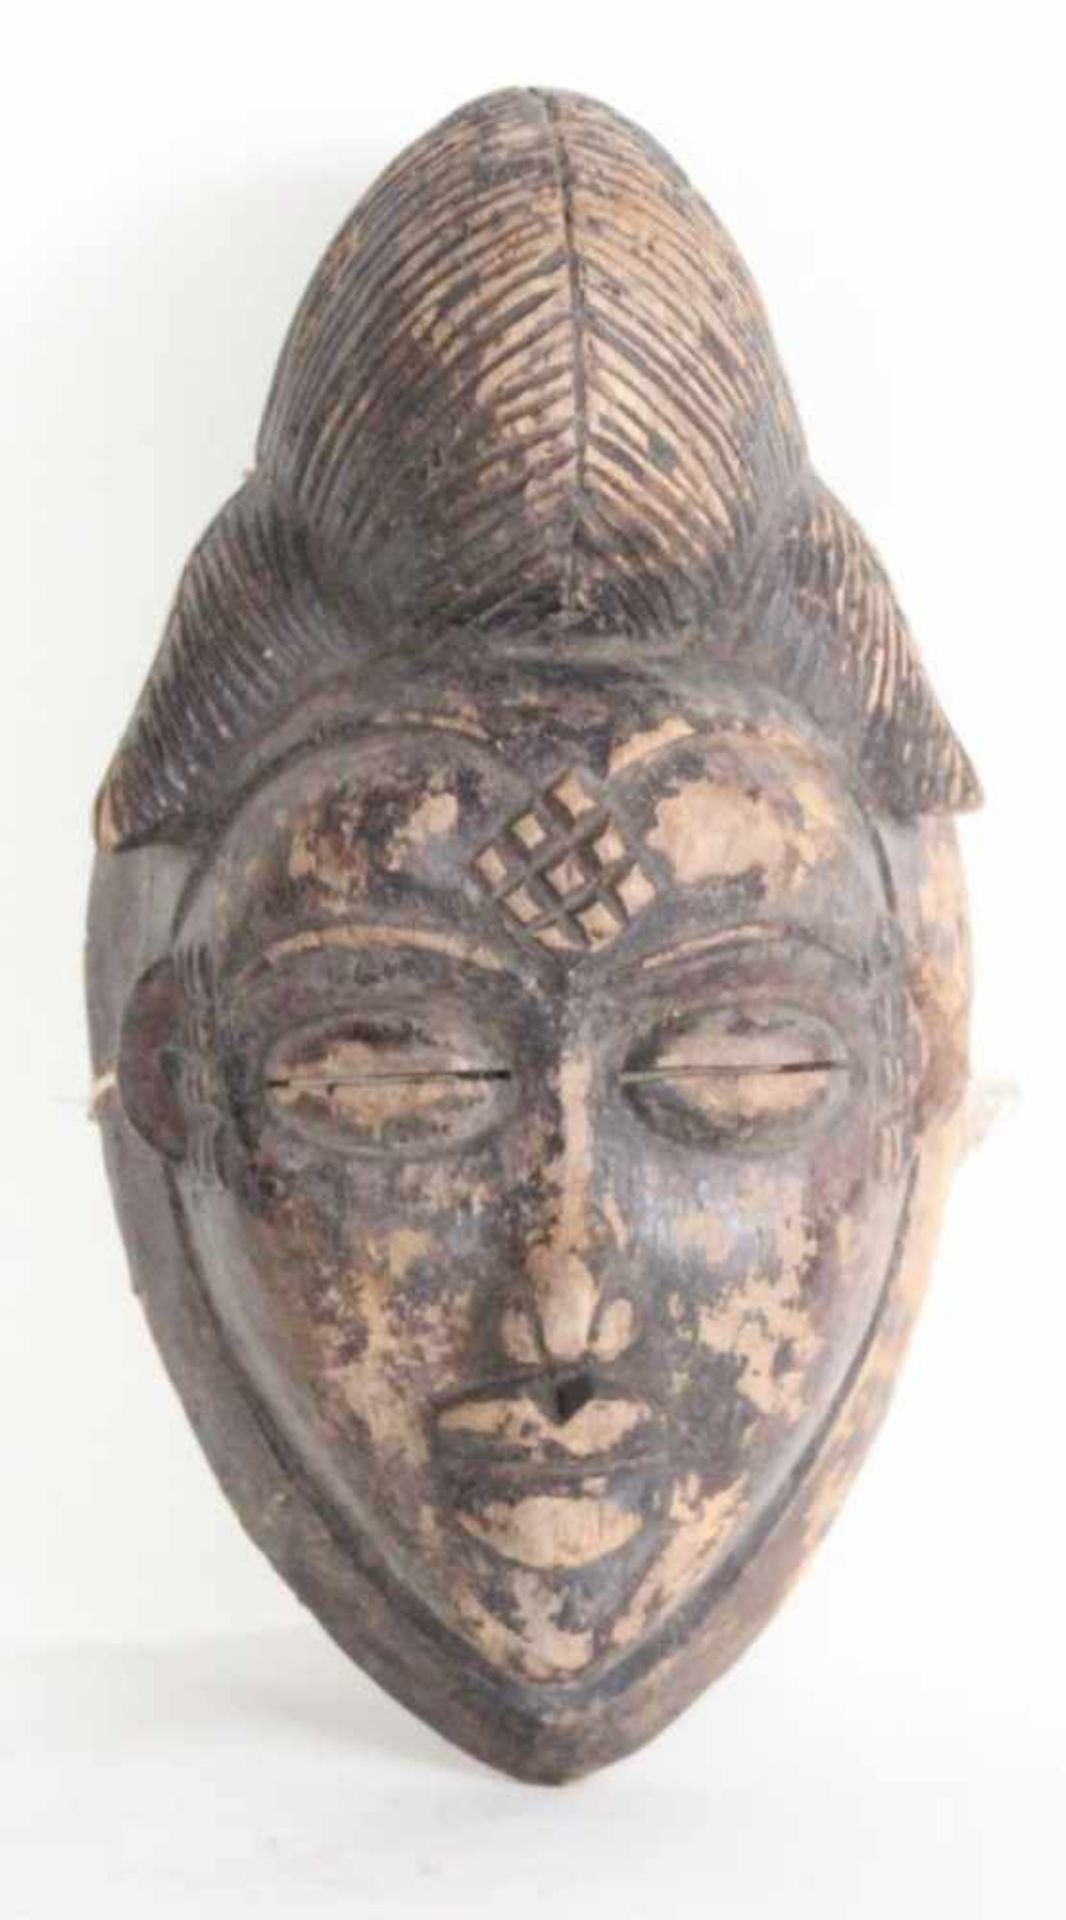 Vorhaltemaske - Punu/Gabun Holz, Höhe ca. 30 cm, verziert mit Tattoos, auffallende Haarpracht,